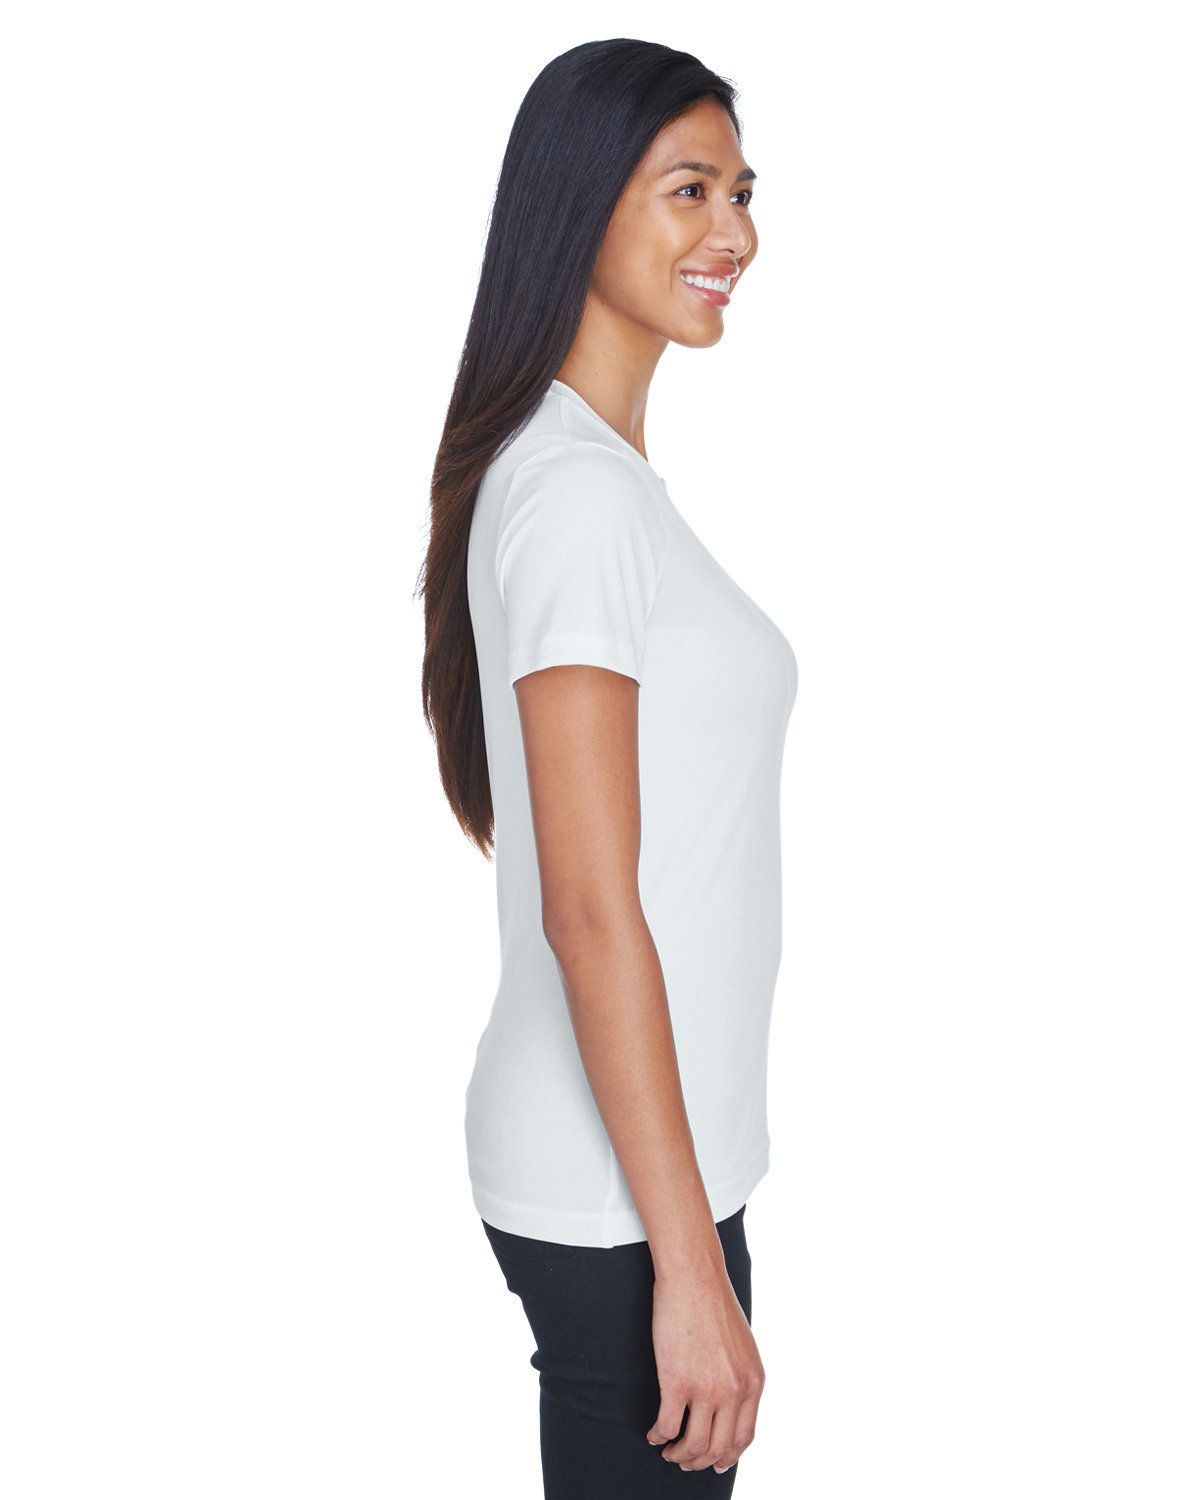 'UltraClub 8620L Ladies Cool & Dry Basic Performance T-Shirt'